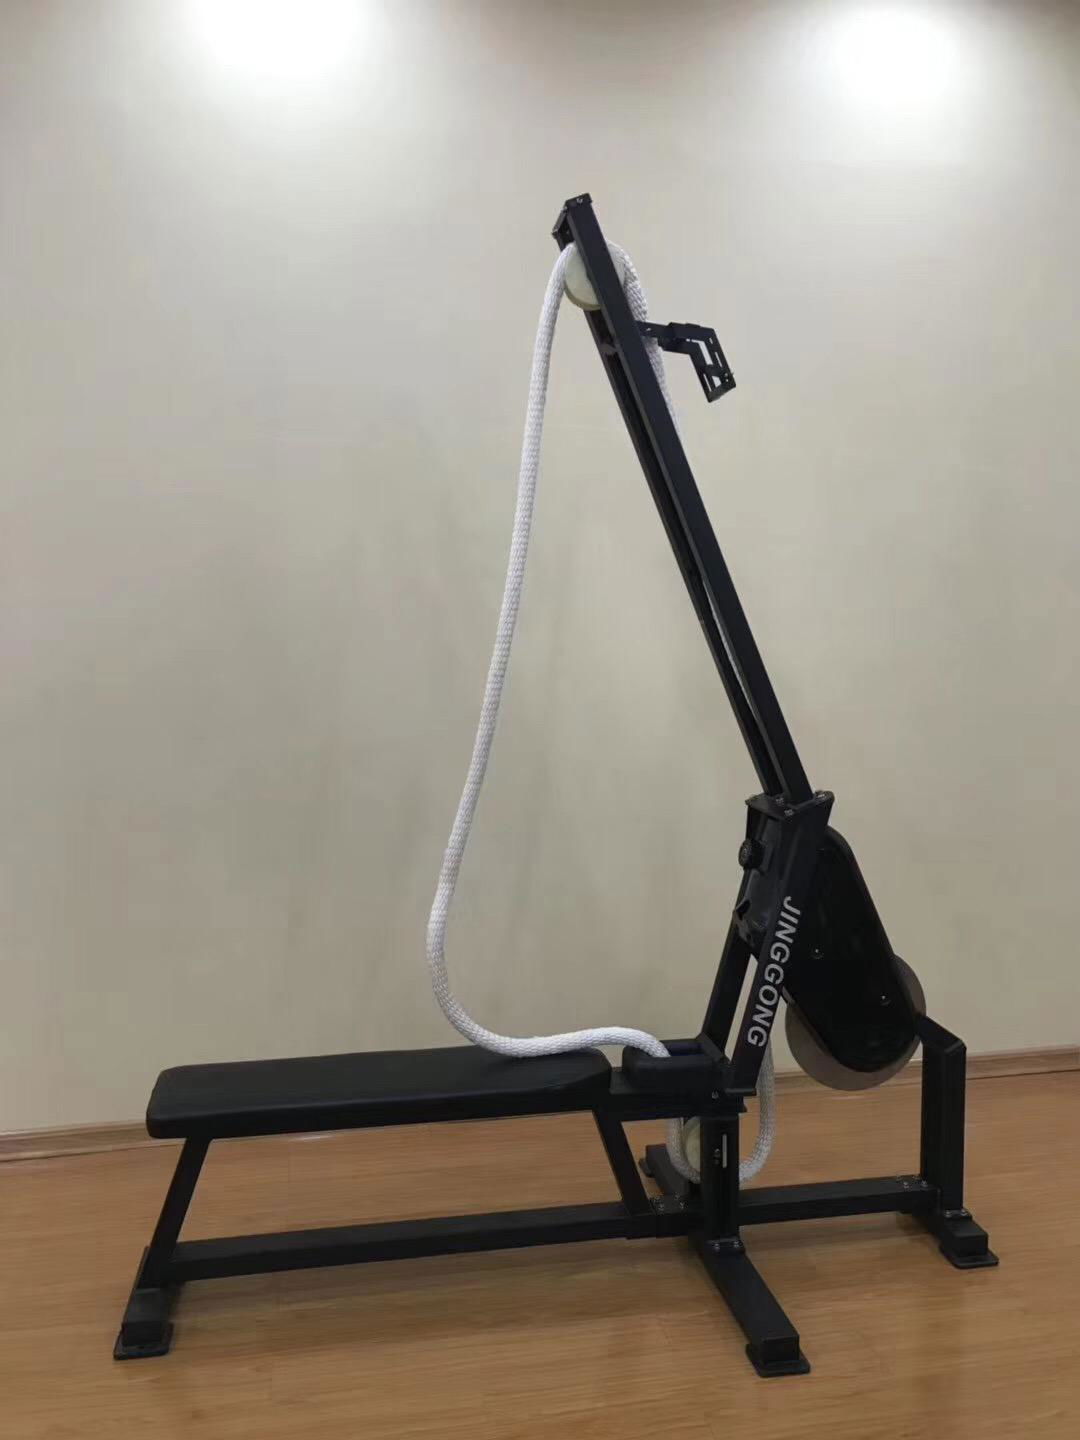 2019 New Product Climb Rope Machine Gym Equipment 3